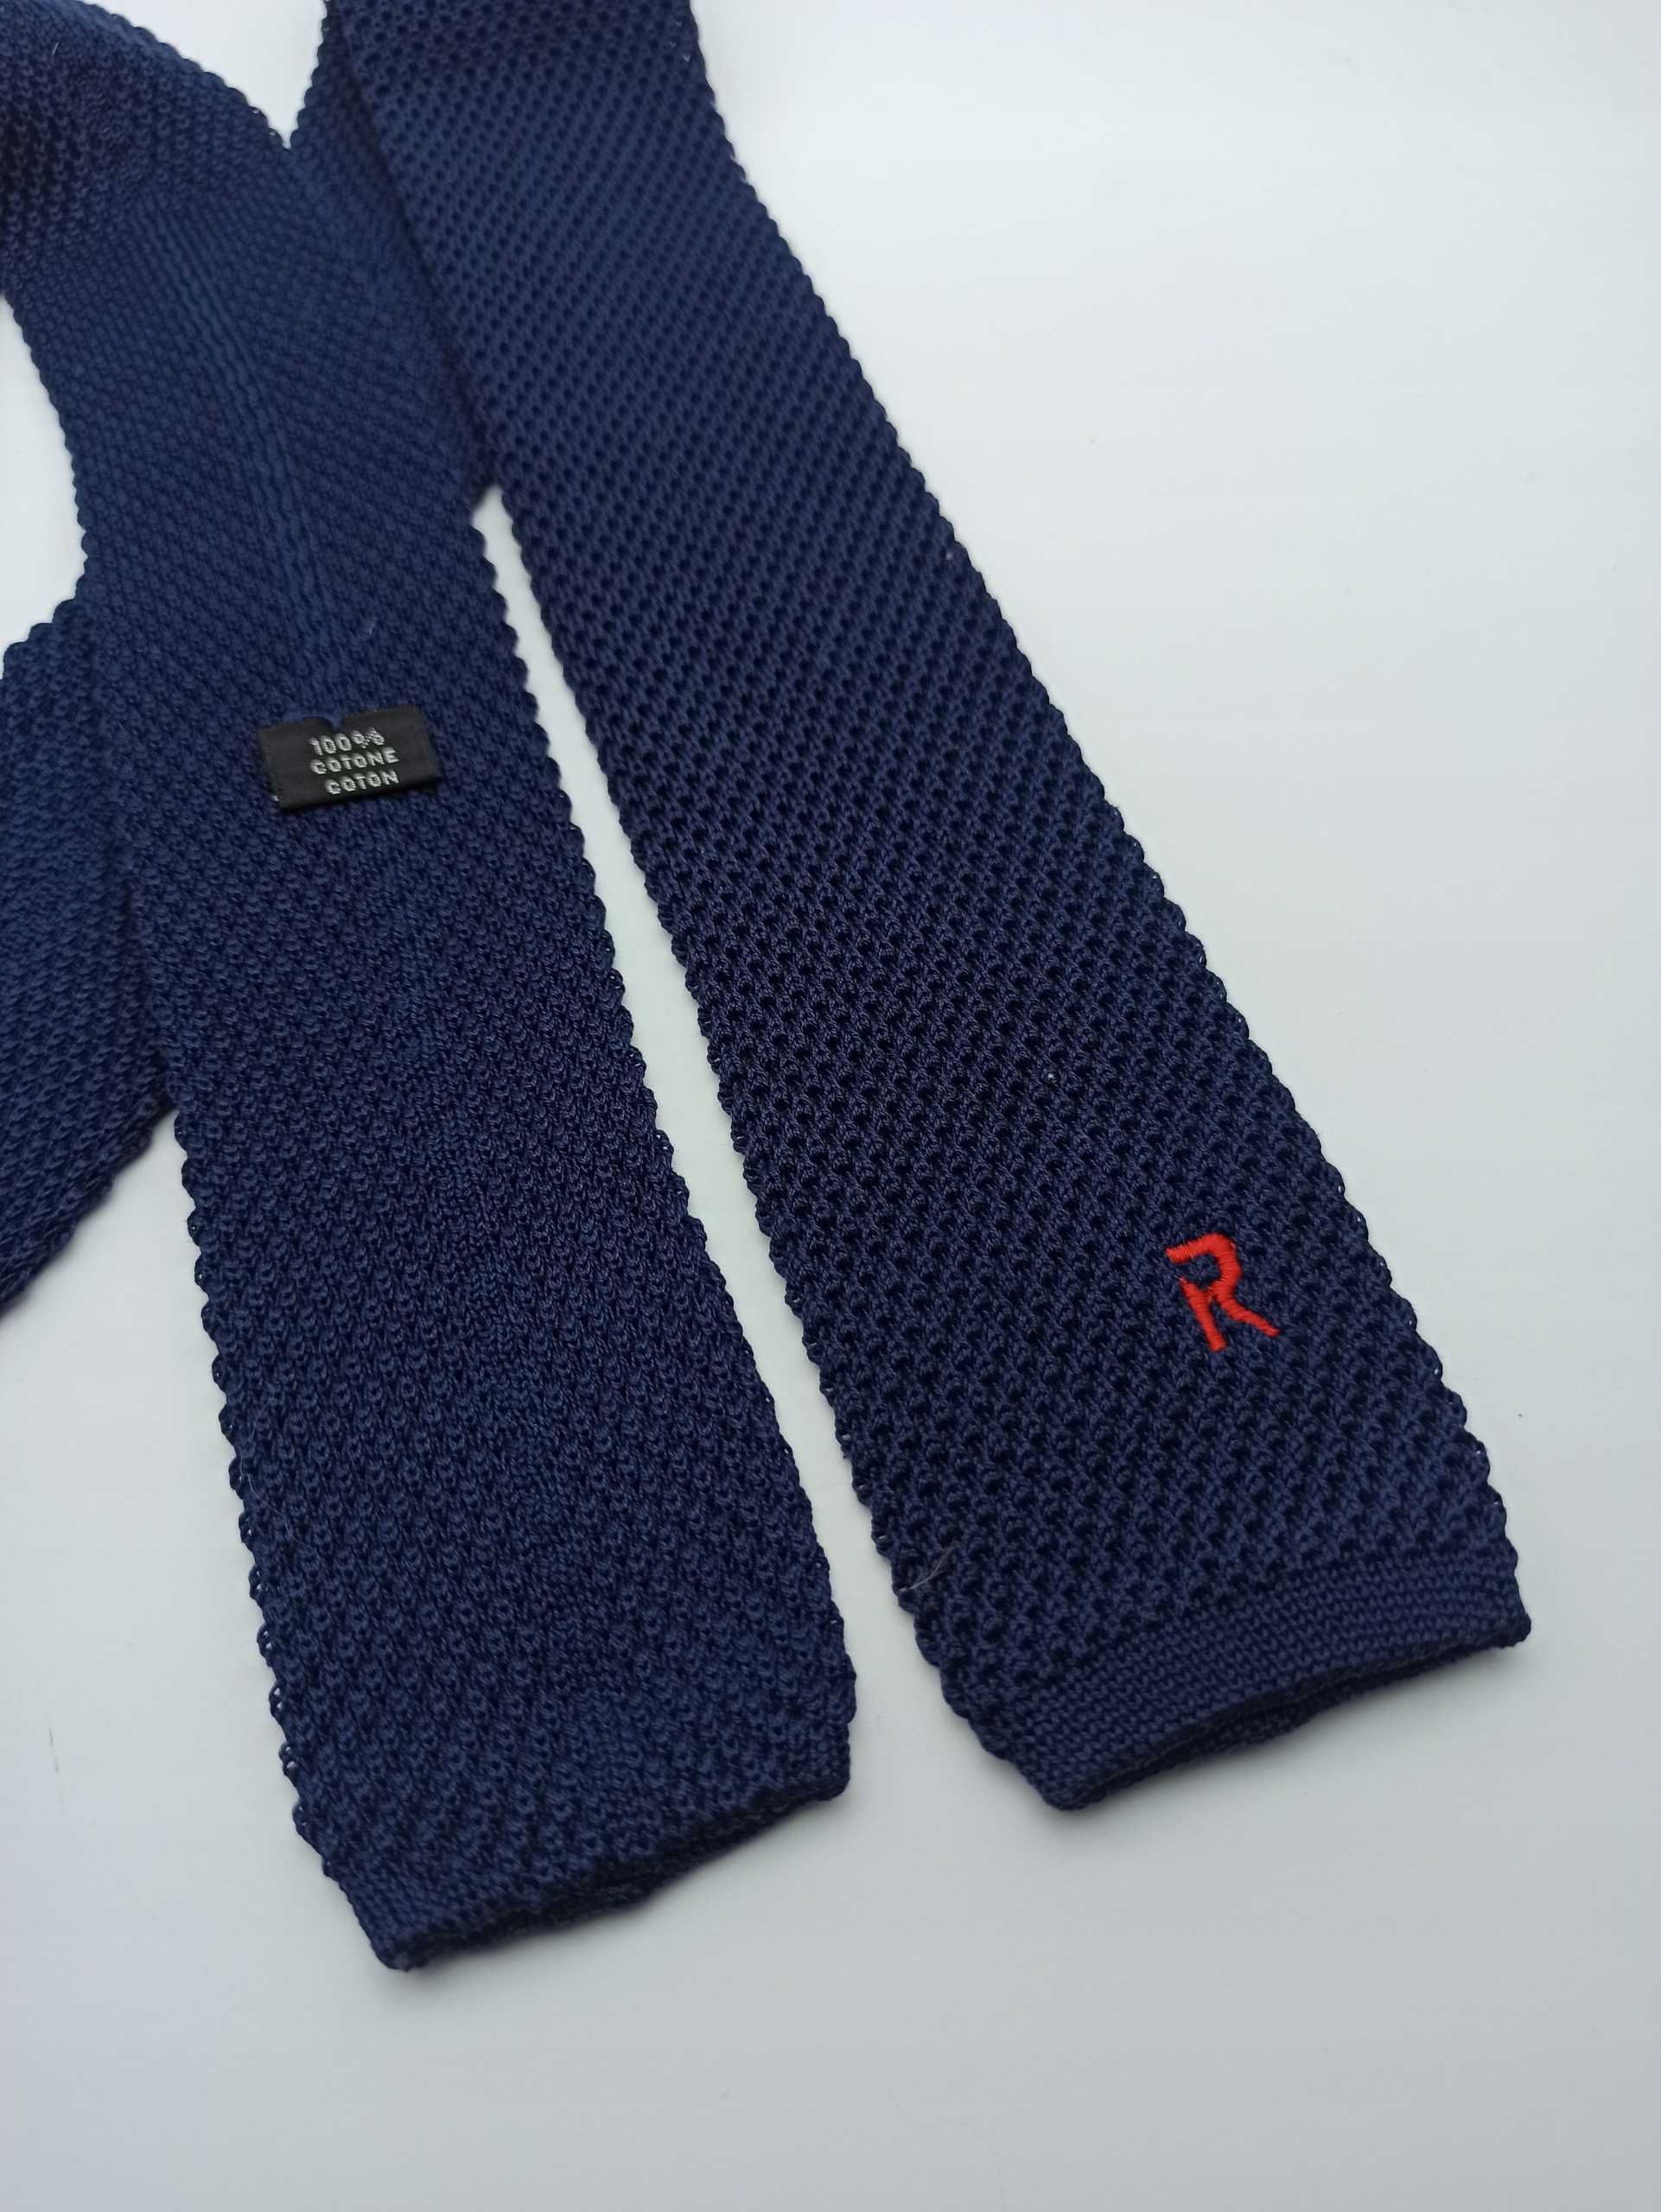 Bawełniany granatowy krawat knit kn26